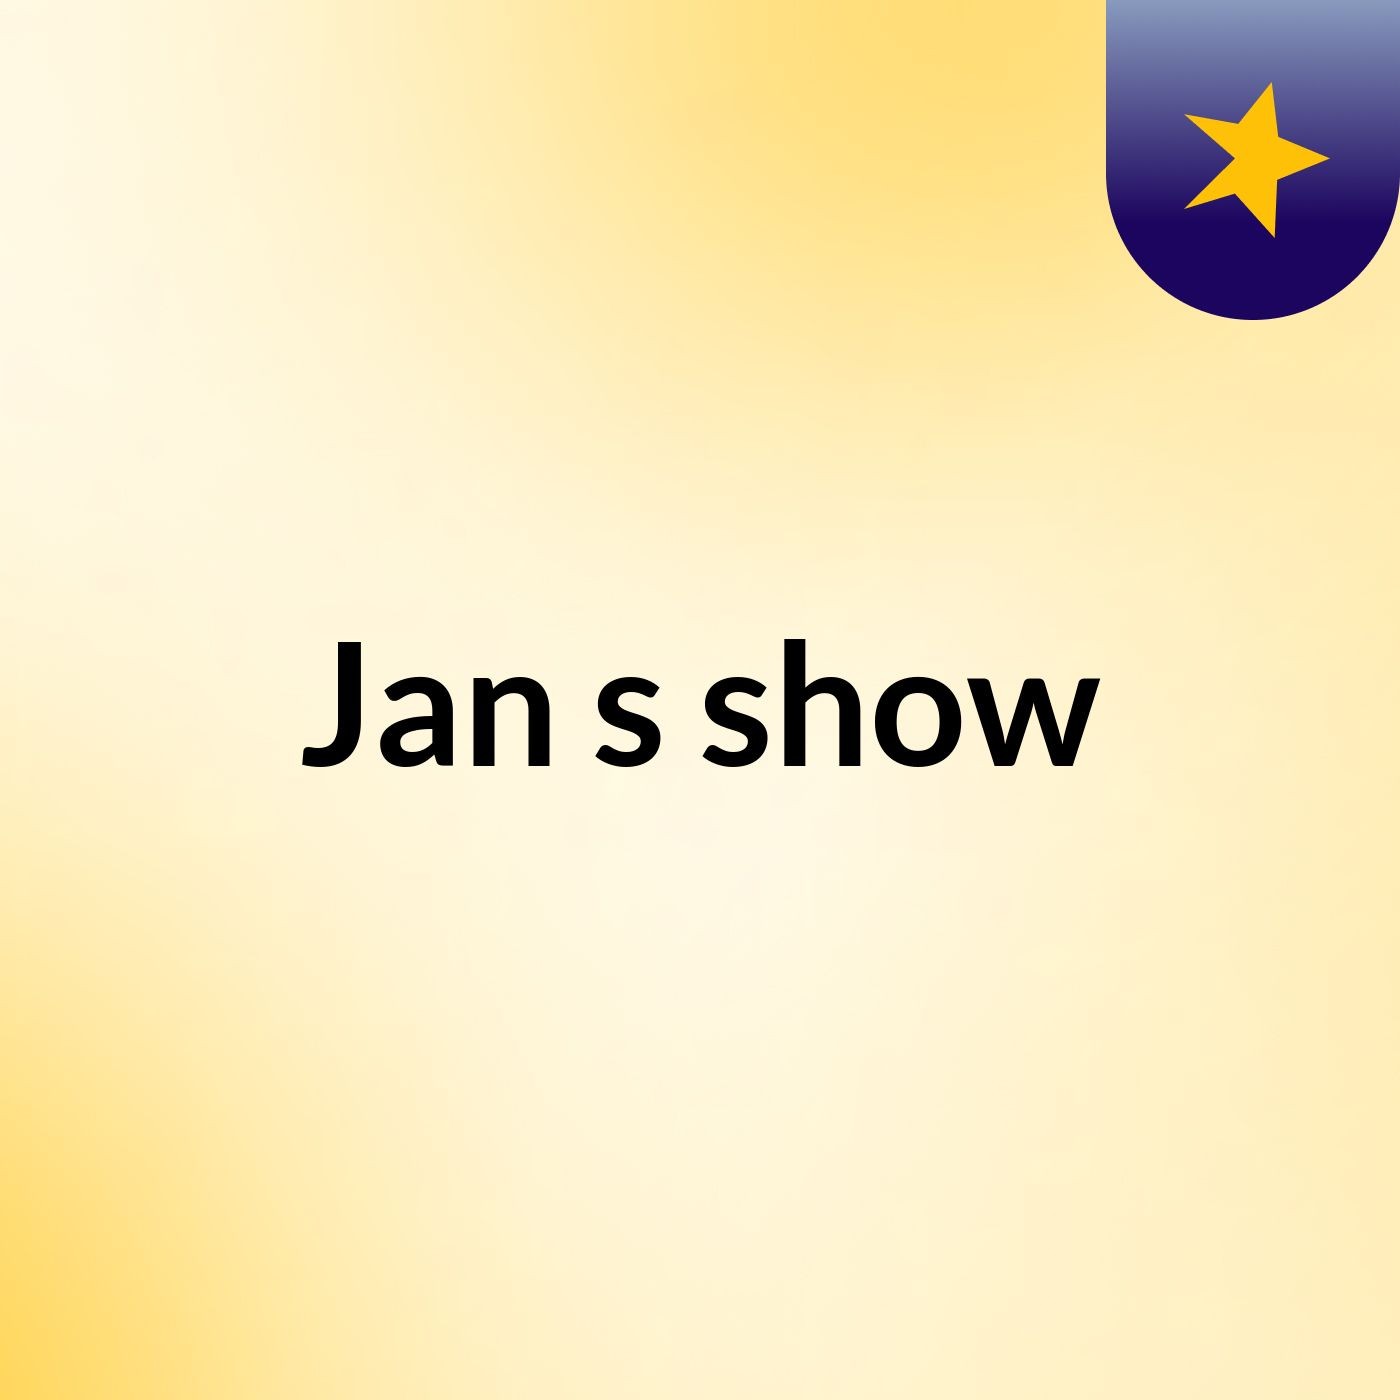 Jan's show